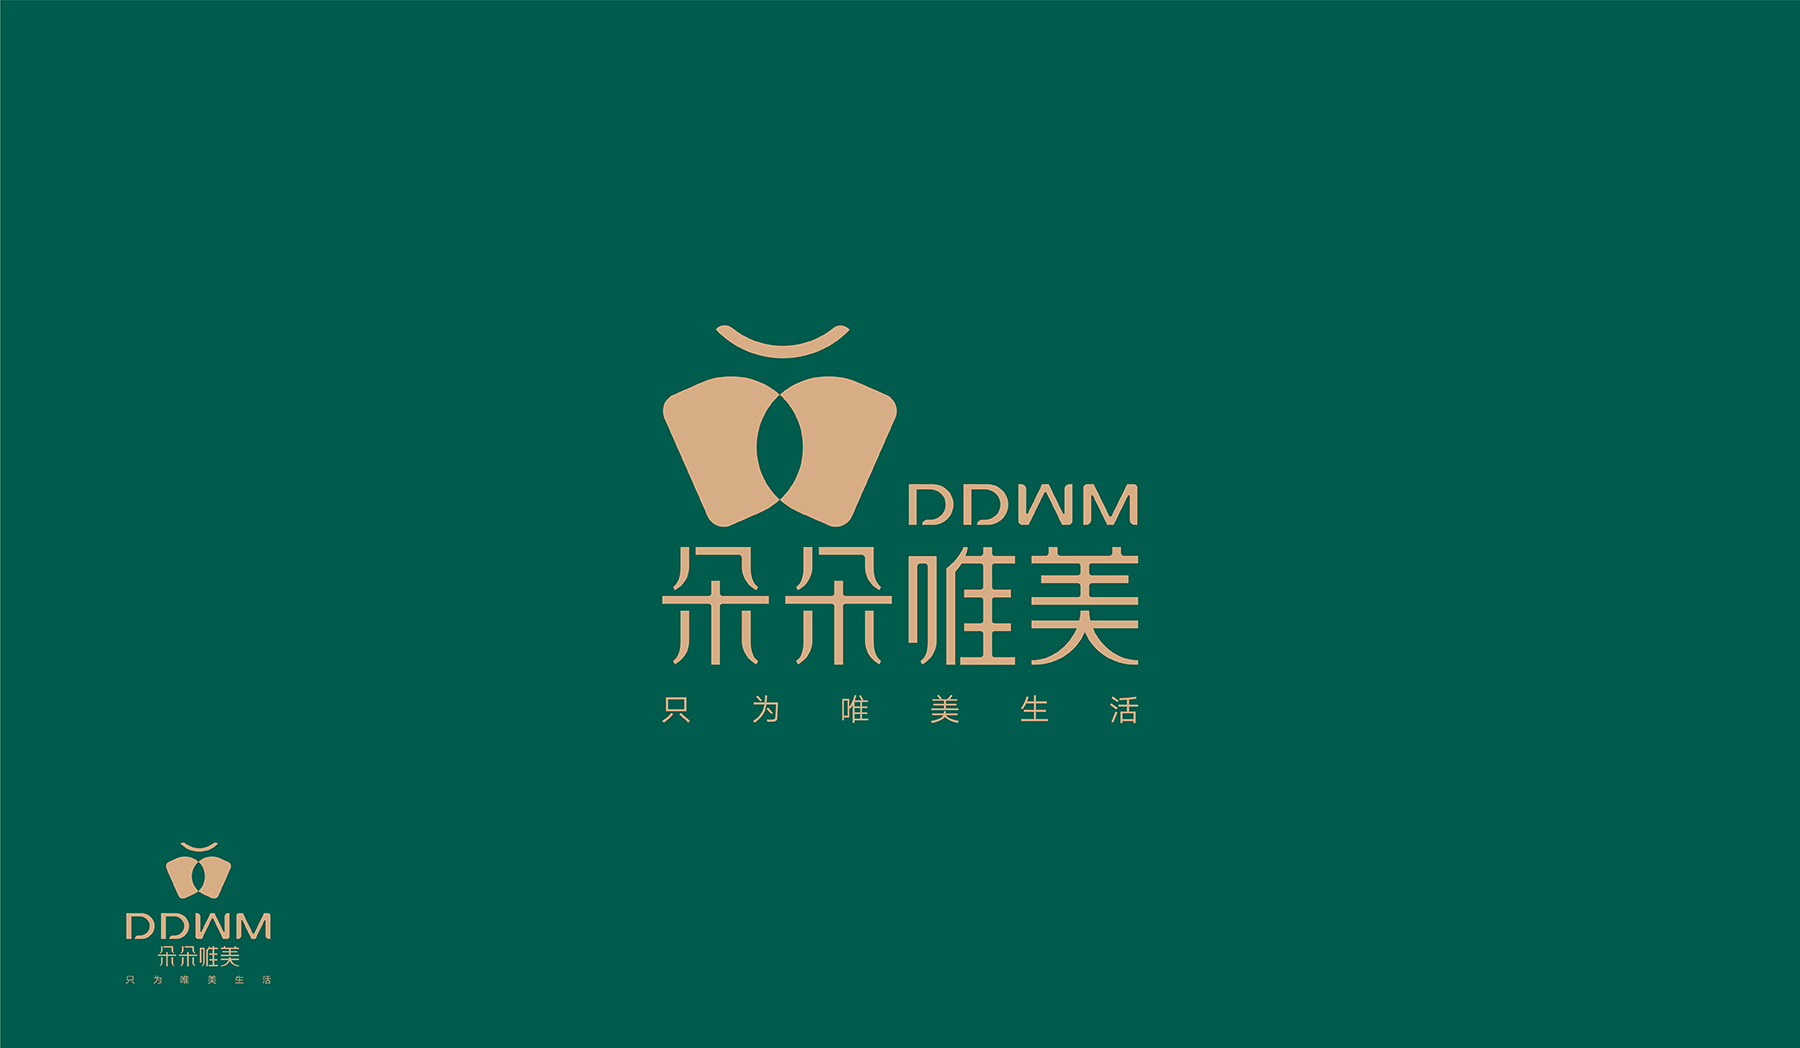 DDWM-03.jpg